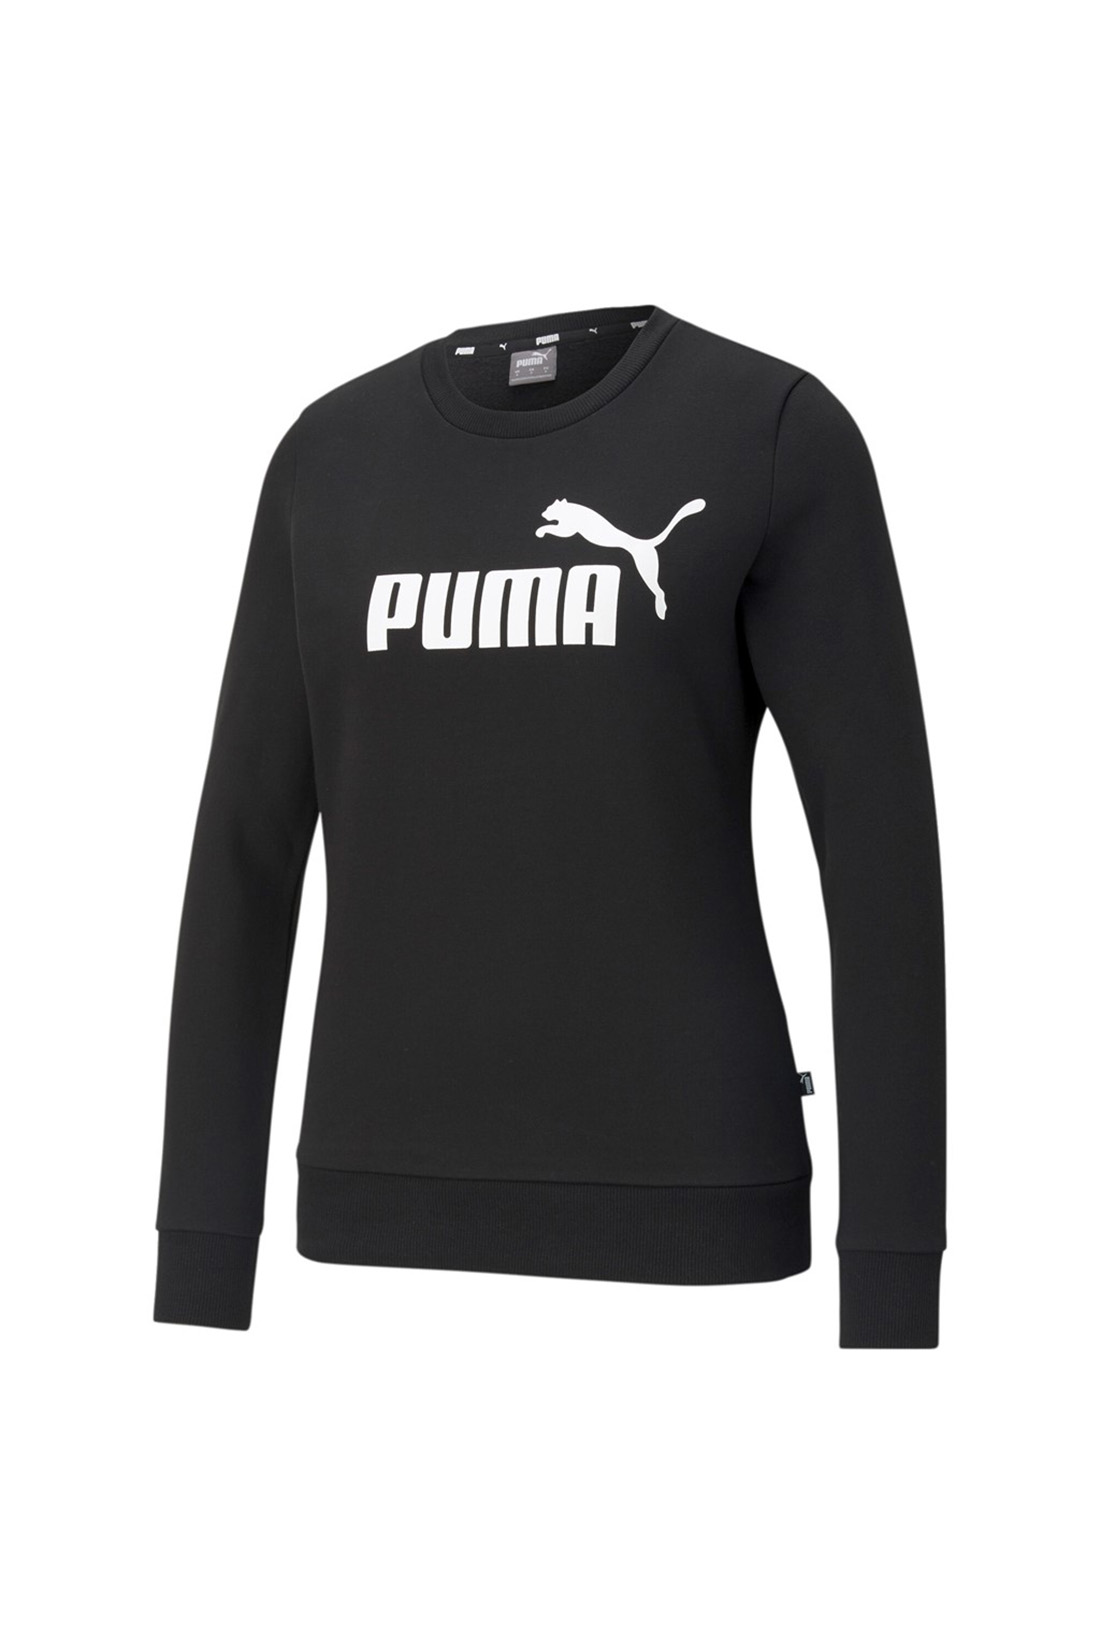 Moletom Puma Logo Crew